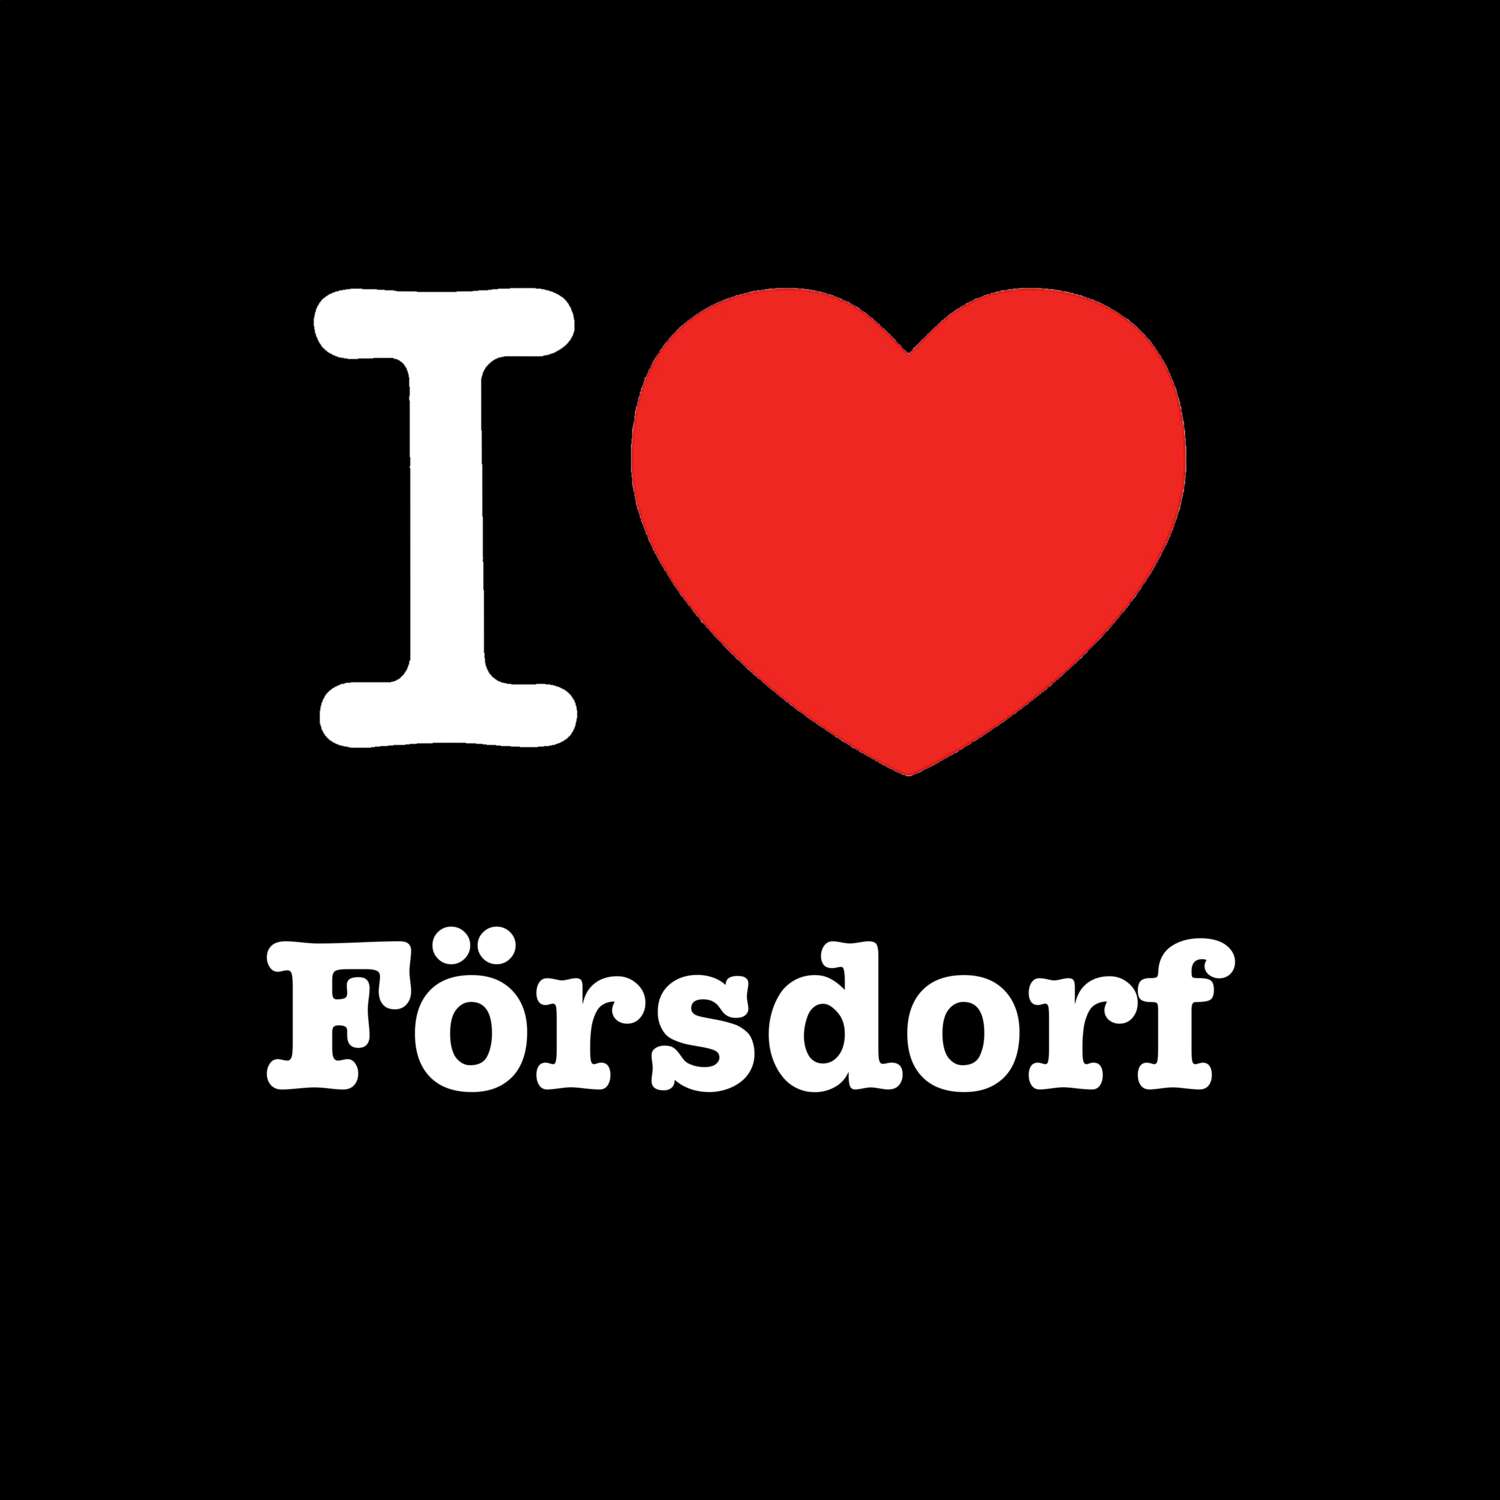 Försdorf T-Shirt »I love«